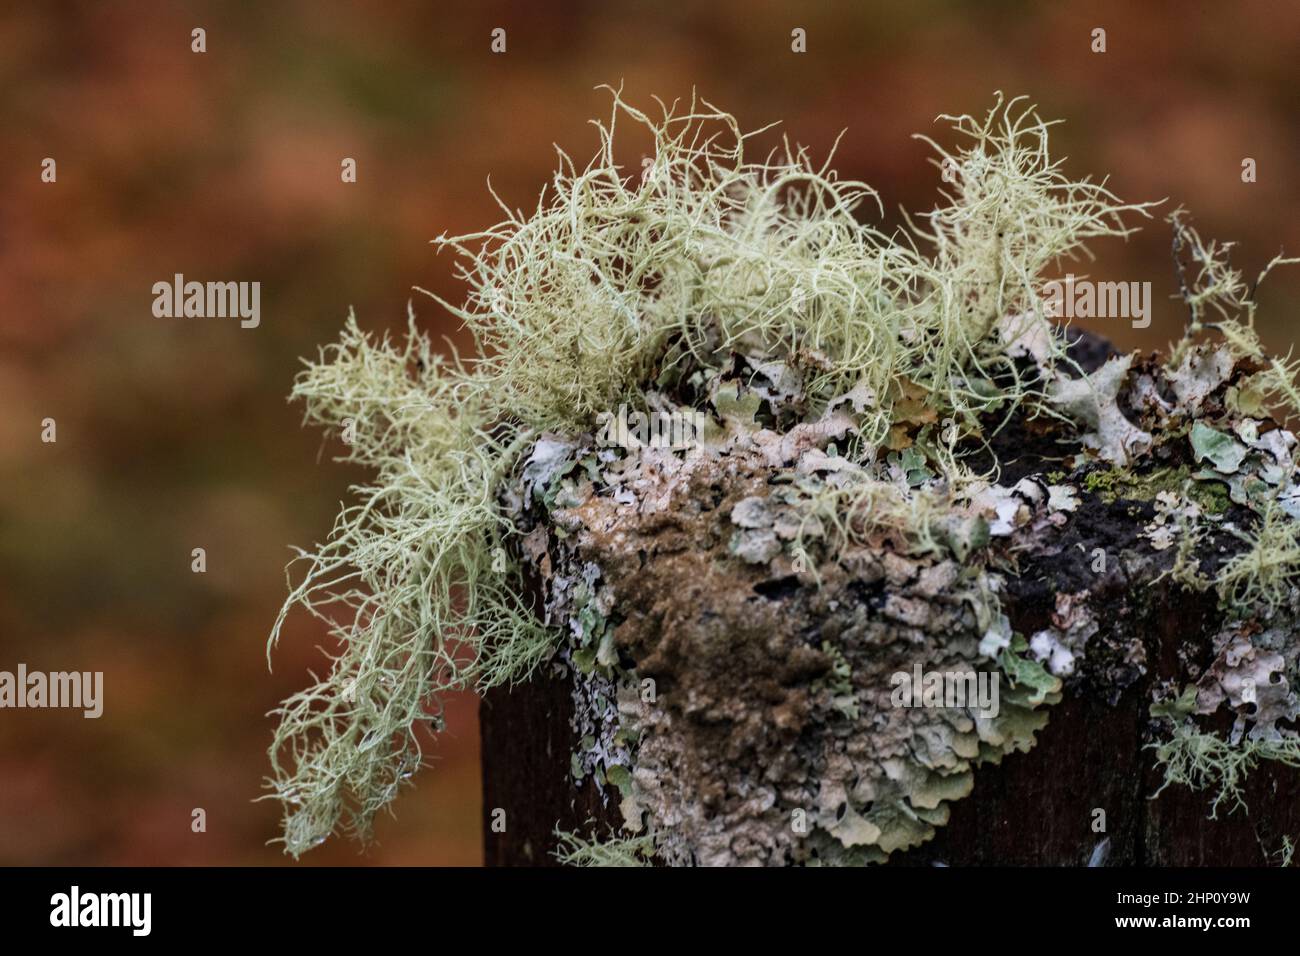 Bearded lichen (Usnea filipendula (Usnea dasopoga)) and Monk's-hood lichen (Hypogymnia physodes) on fence post Stock Photo